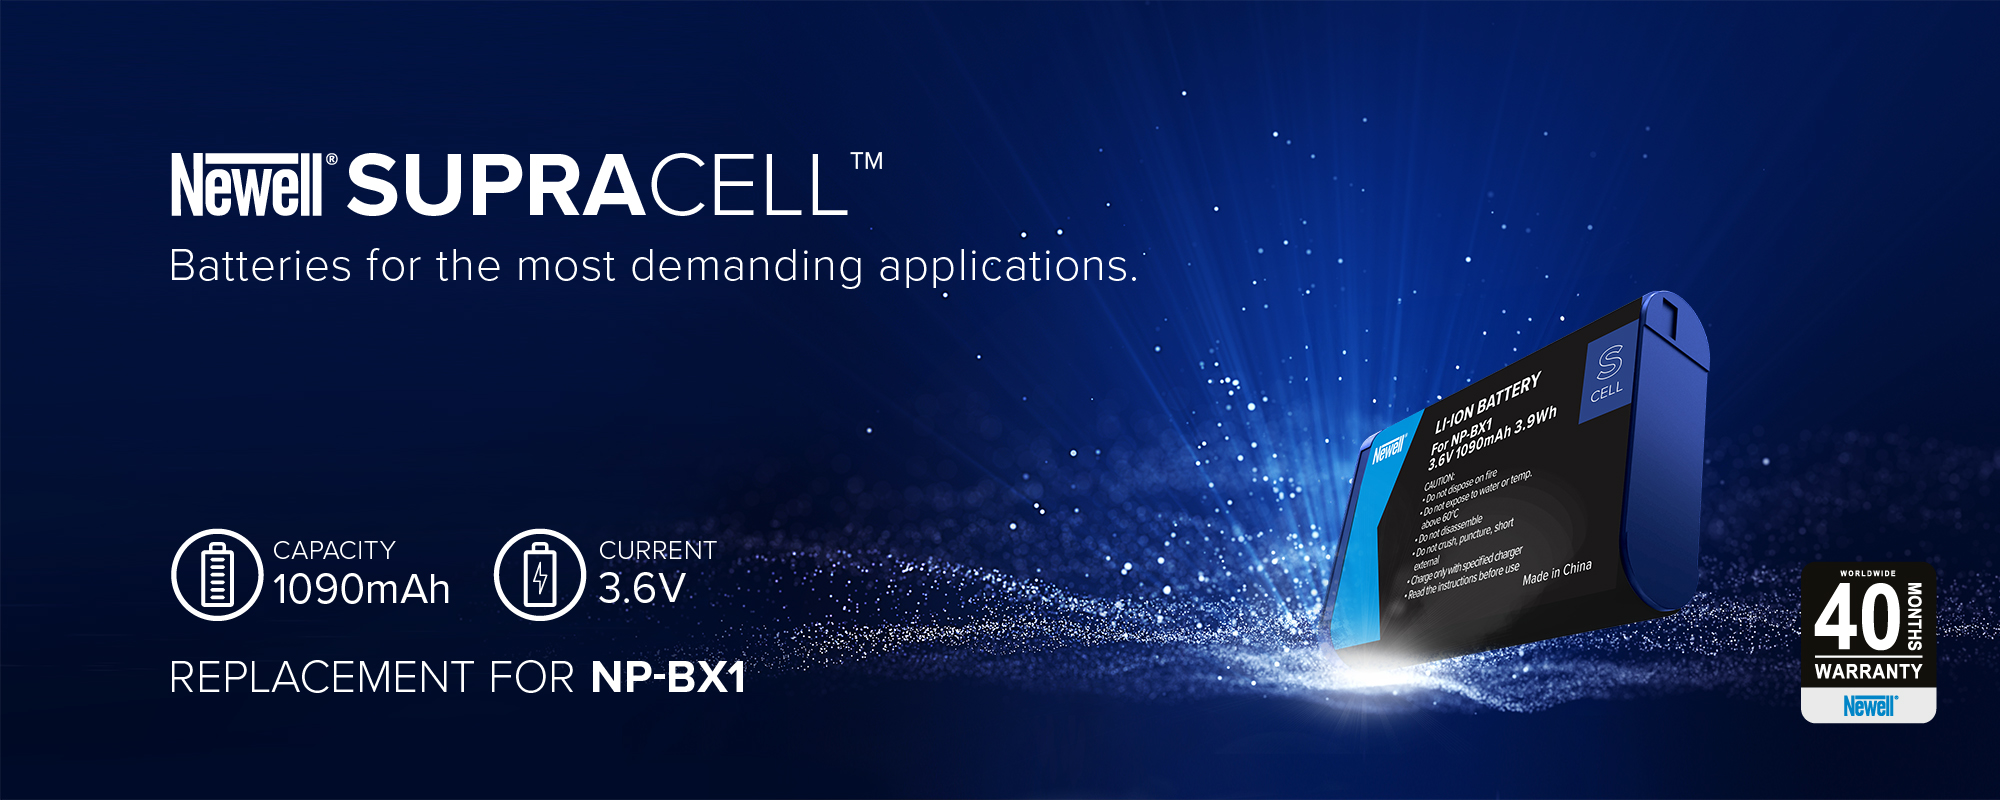 Akumulator zastępczy Newell SupraCell Protect NP-BX1 do Sony